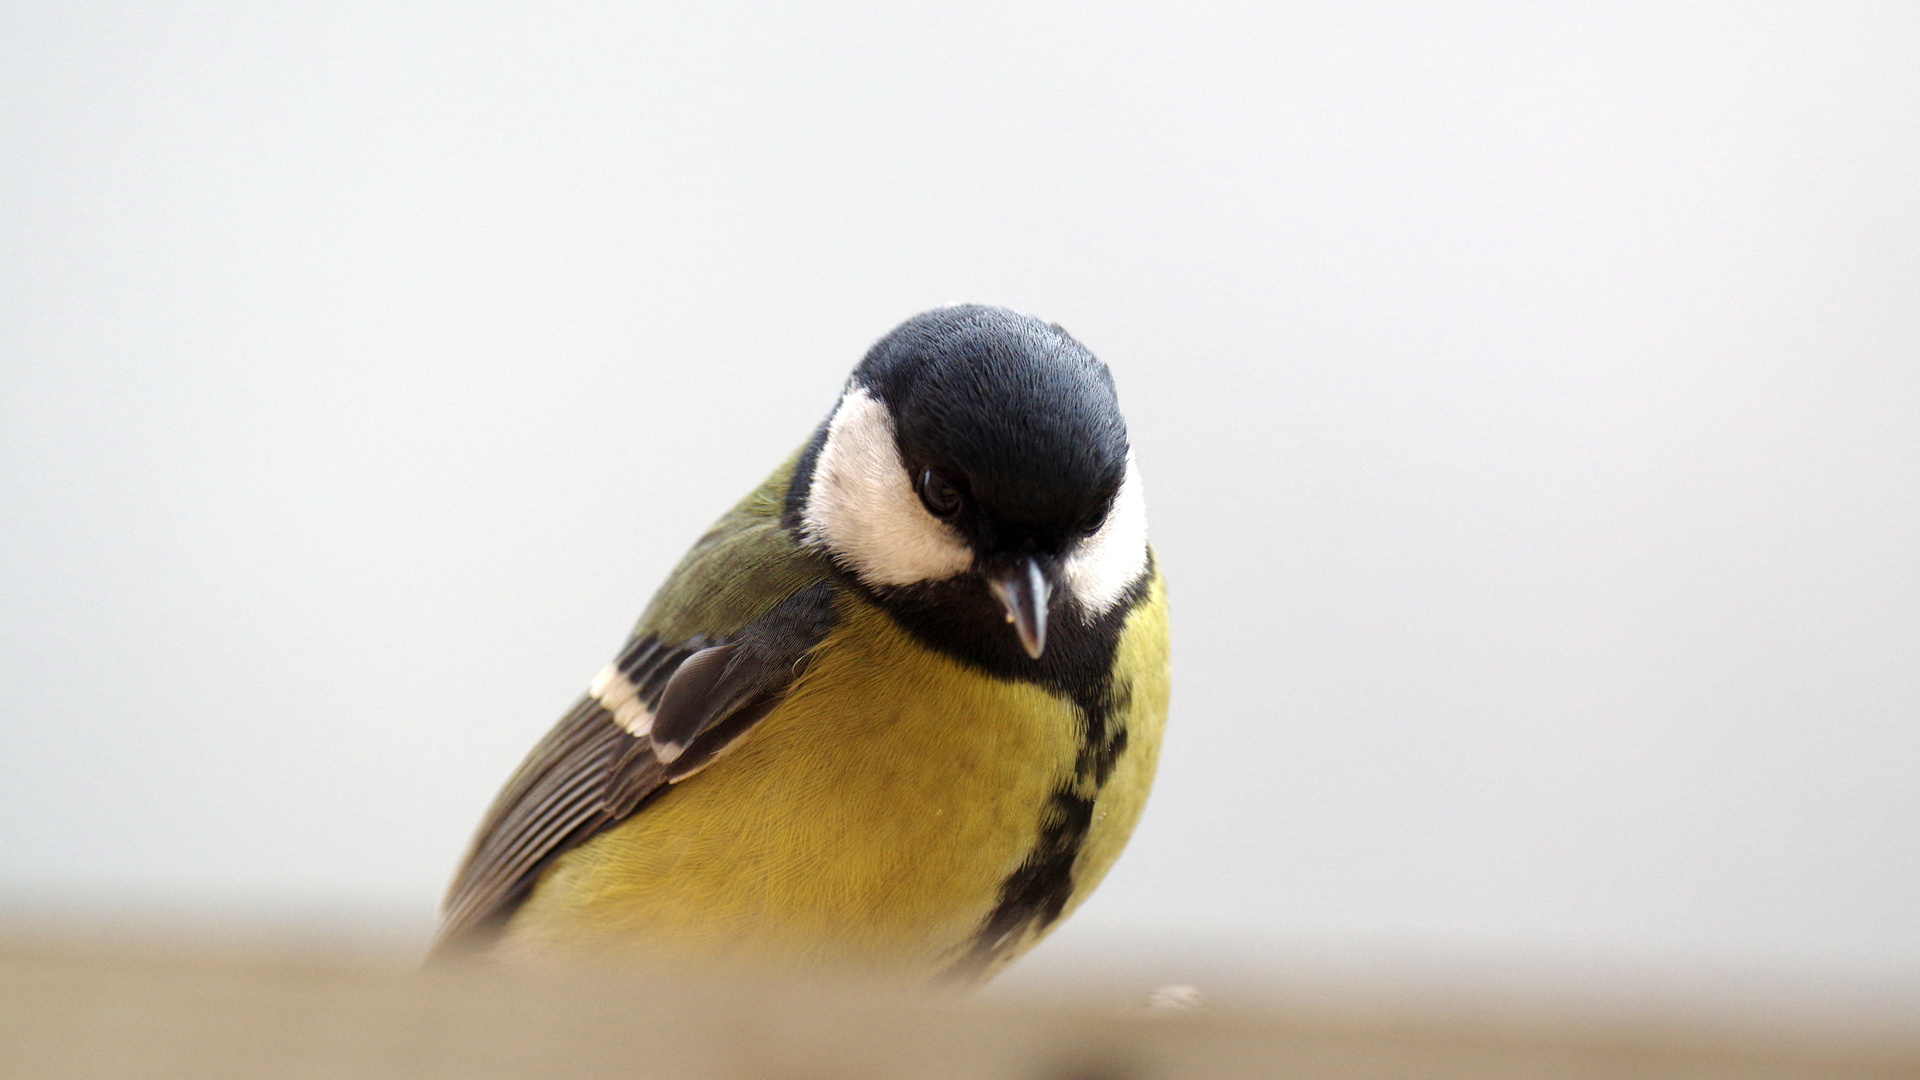 Pensive birdie